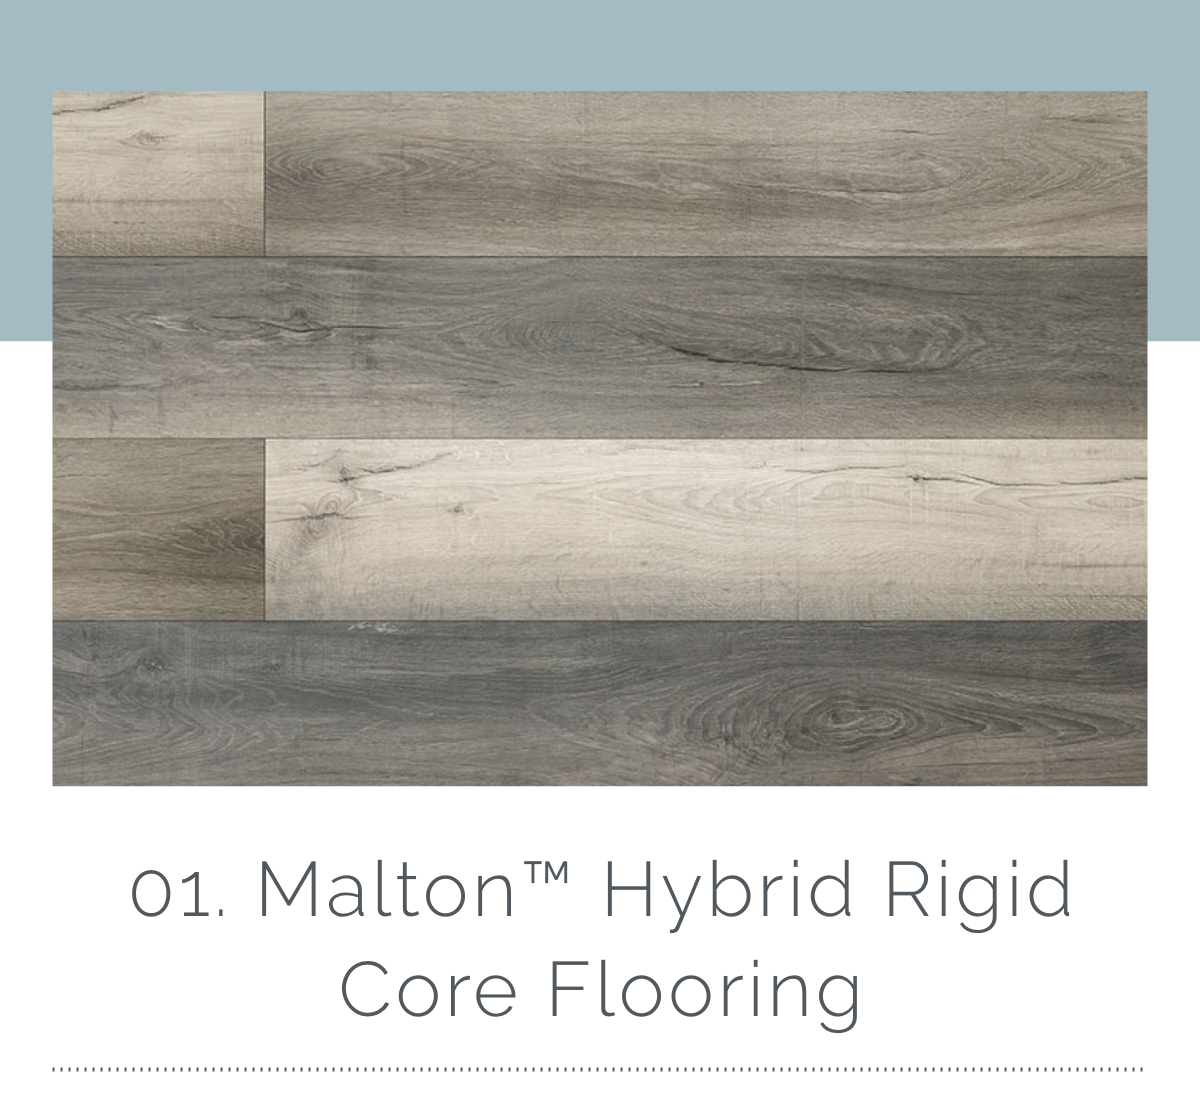 01. Malton Hybrid Rigid Core Flooring